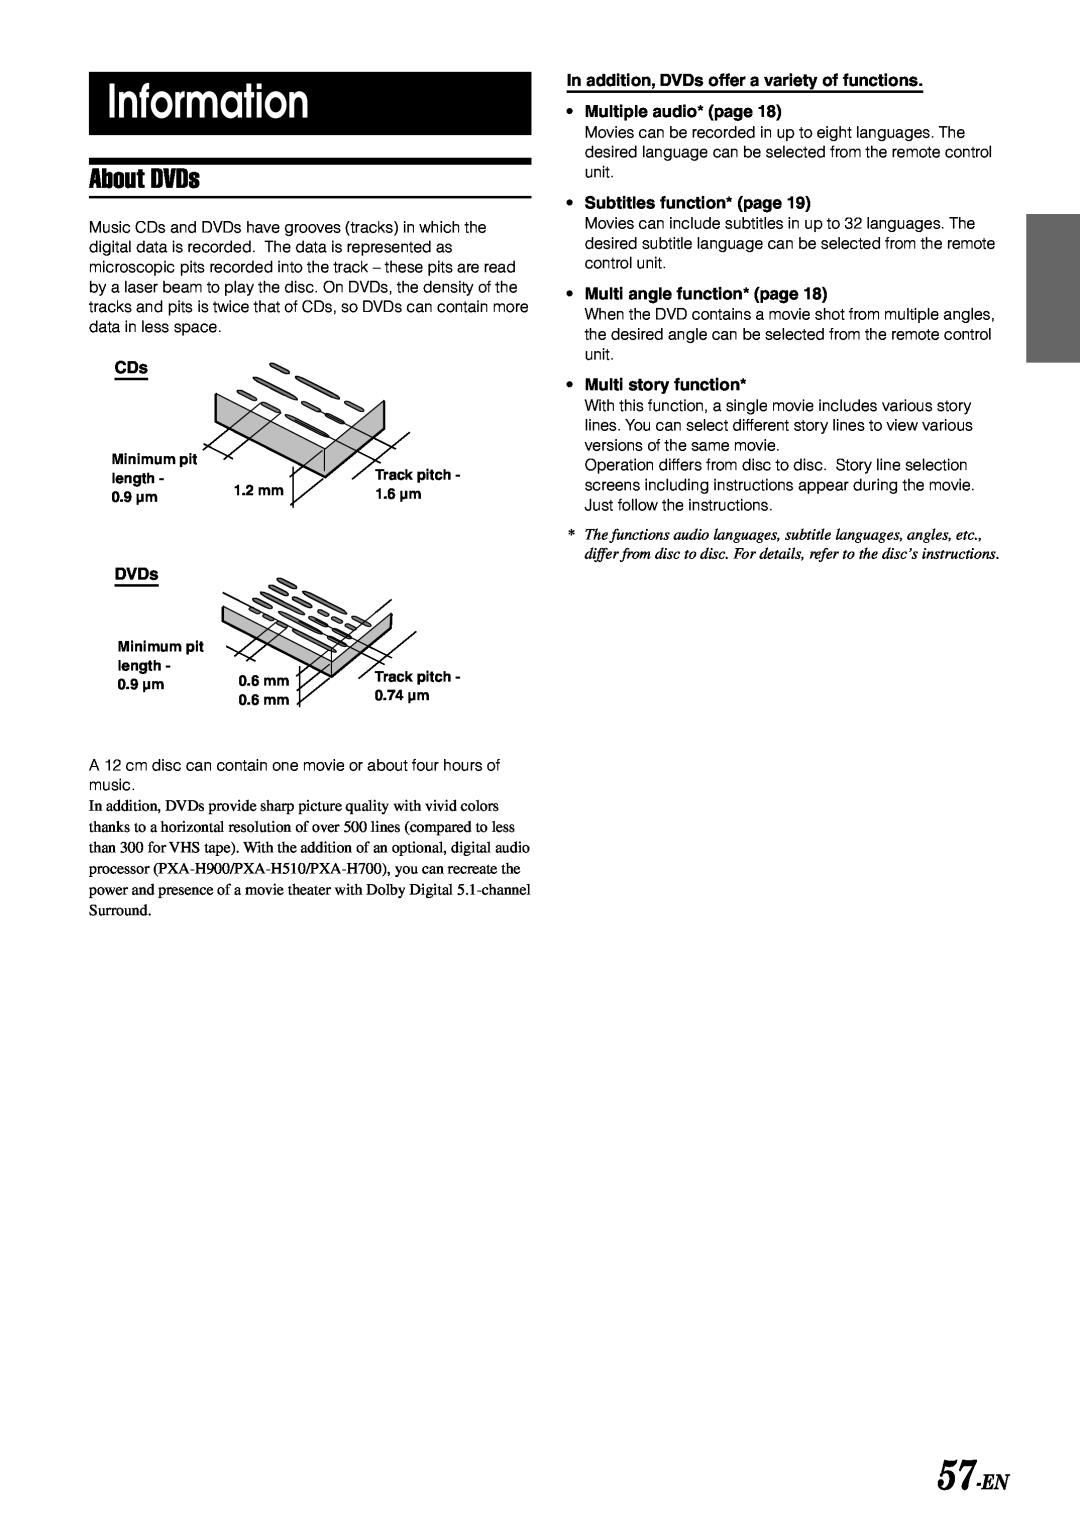 Alpine IVA-D900 owner manual Information, About DVDs, 57-EN 